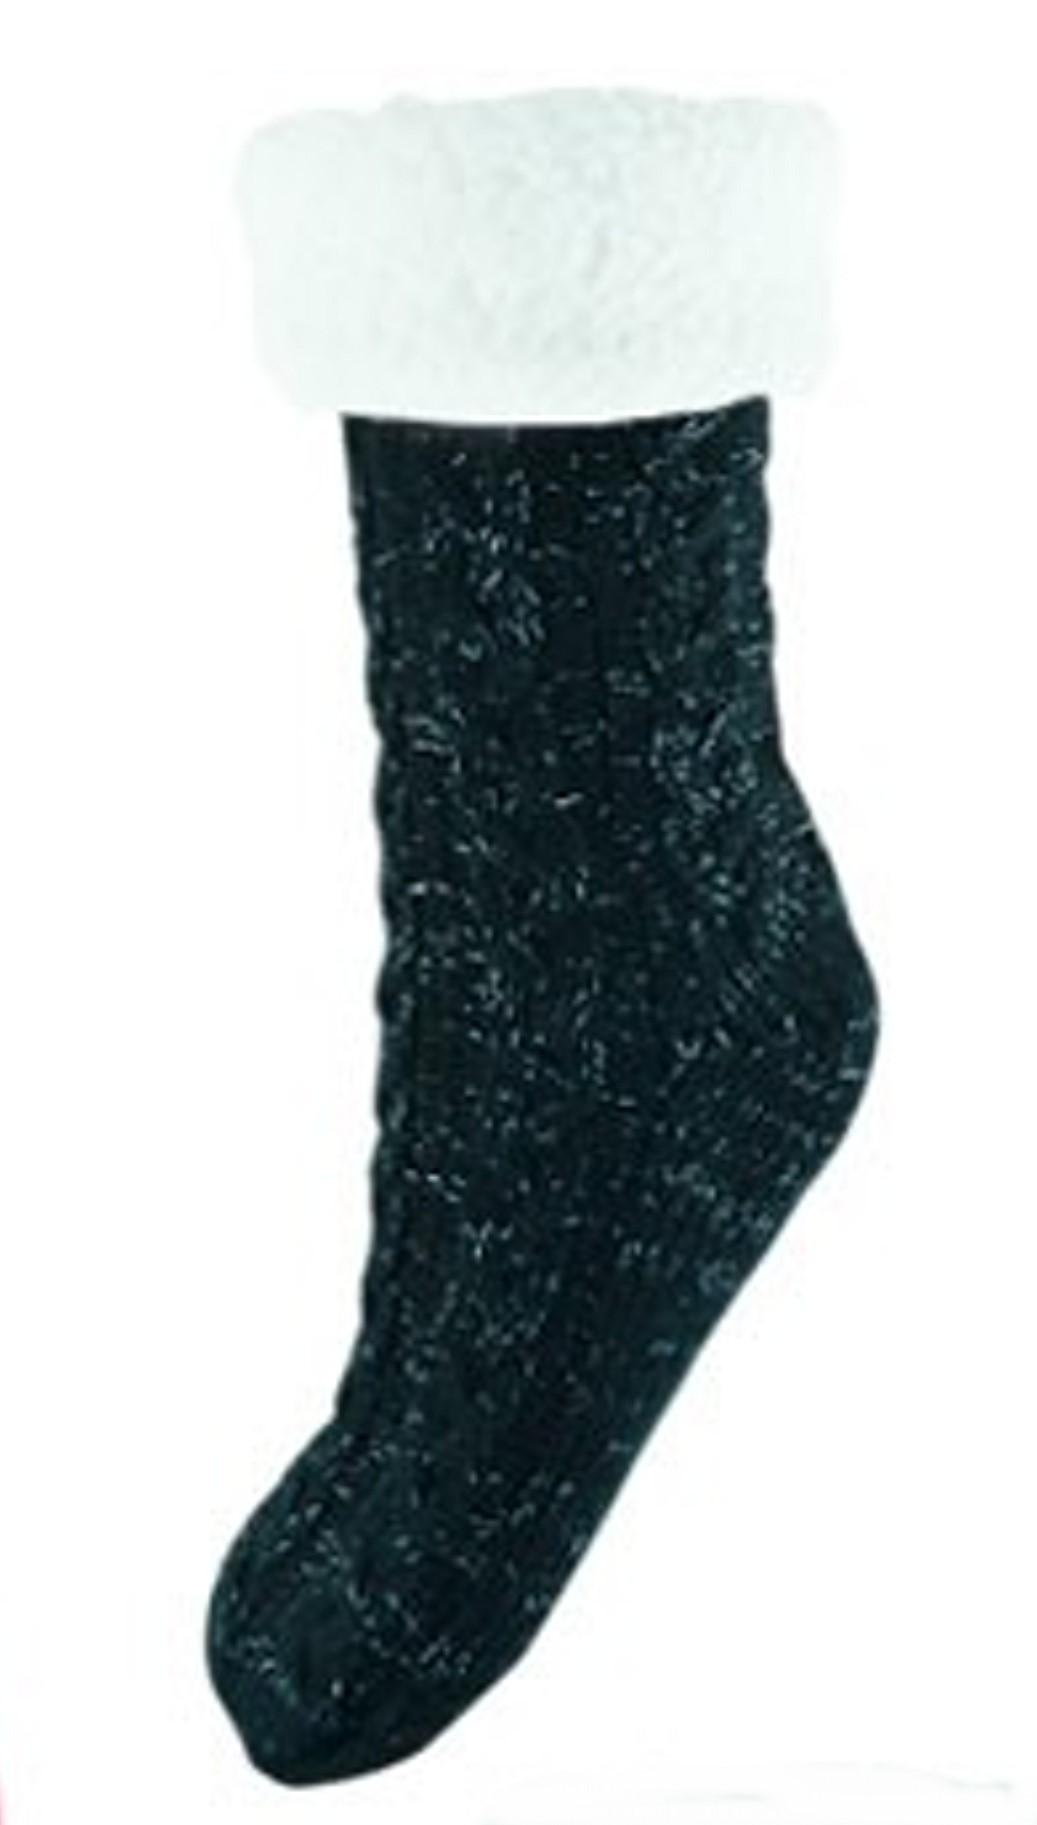 Chunky Knit Socks Black.jpg  by Thingimijigs